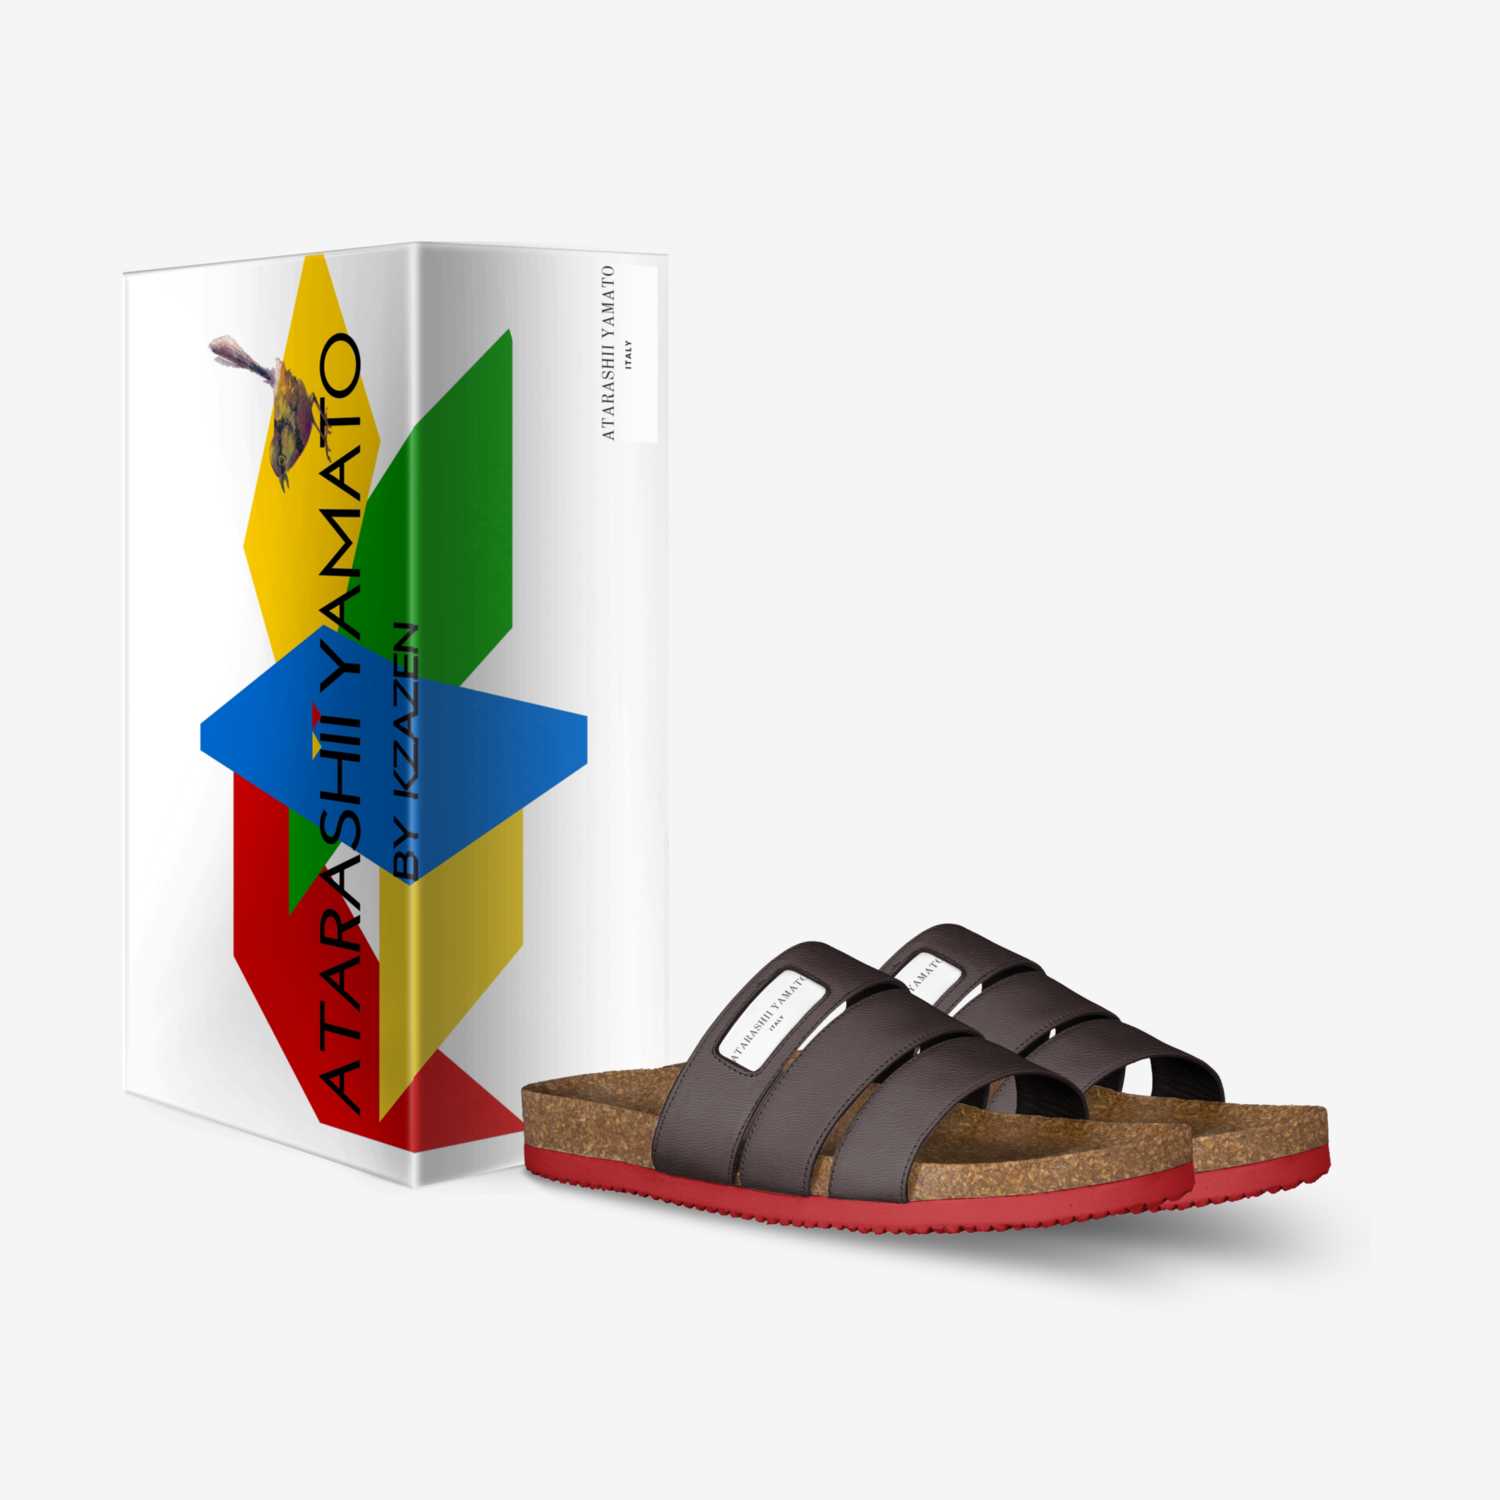 ATARASHII YAMATO custom made in Italy shoes by Kendrick Ng | Box view